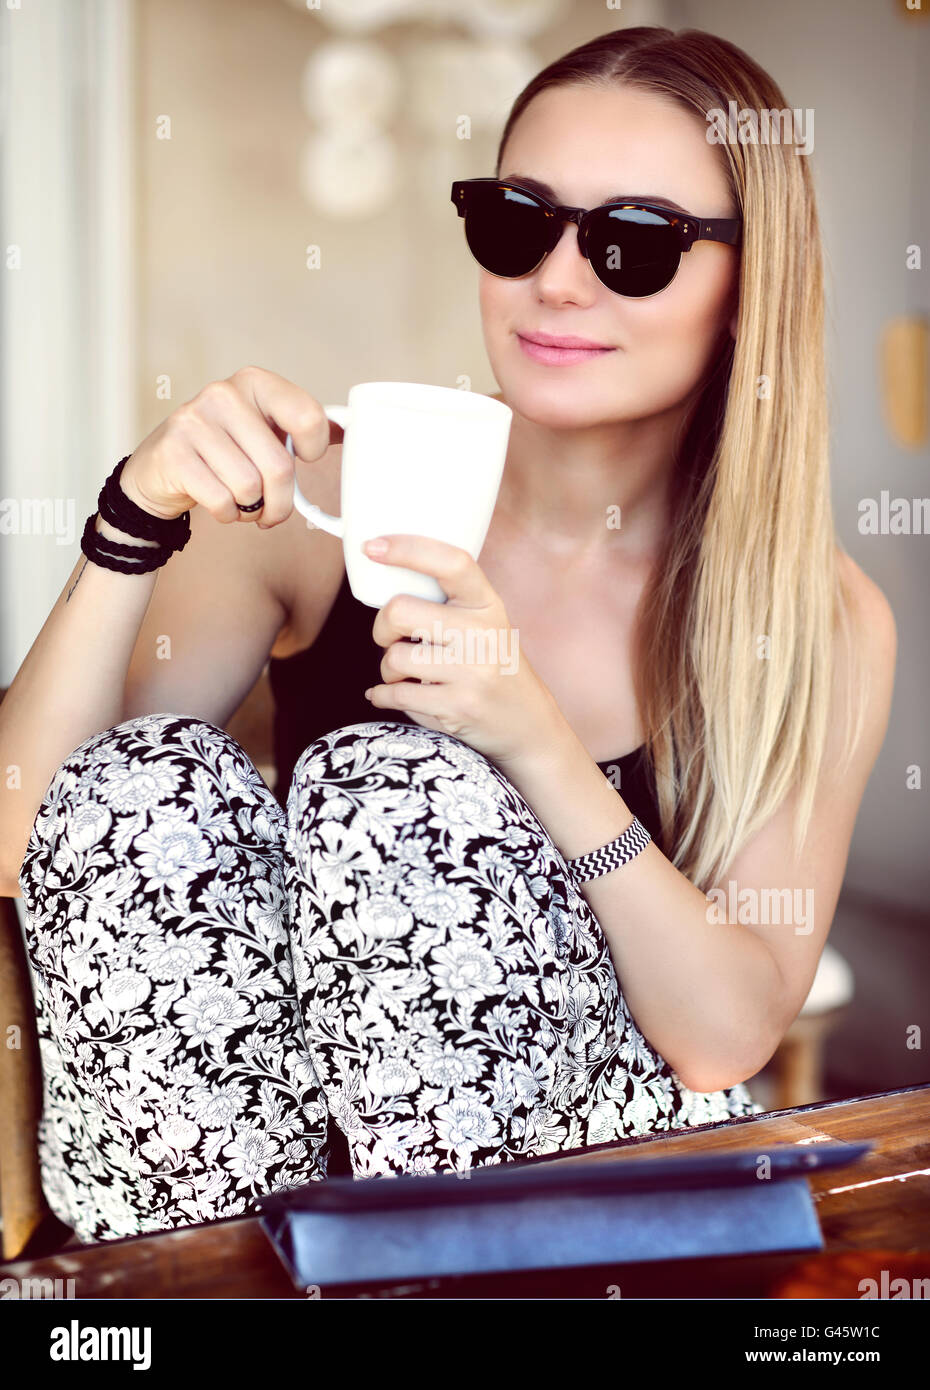 Belle jeune femme de boire du café, élégante jeune fille avec de longs cheveux blonds portant des lunettes à la mode Banque D'Images